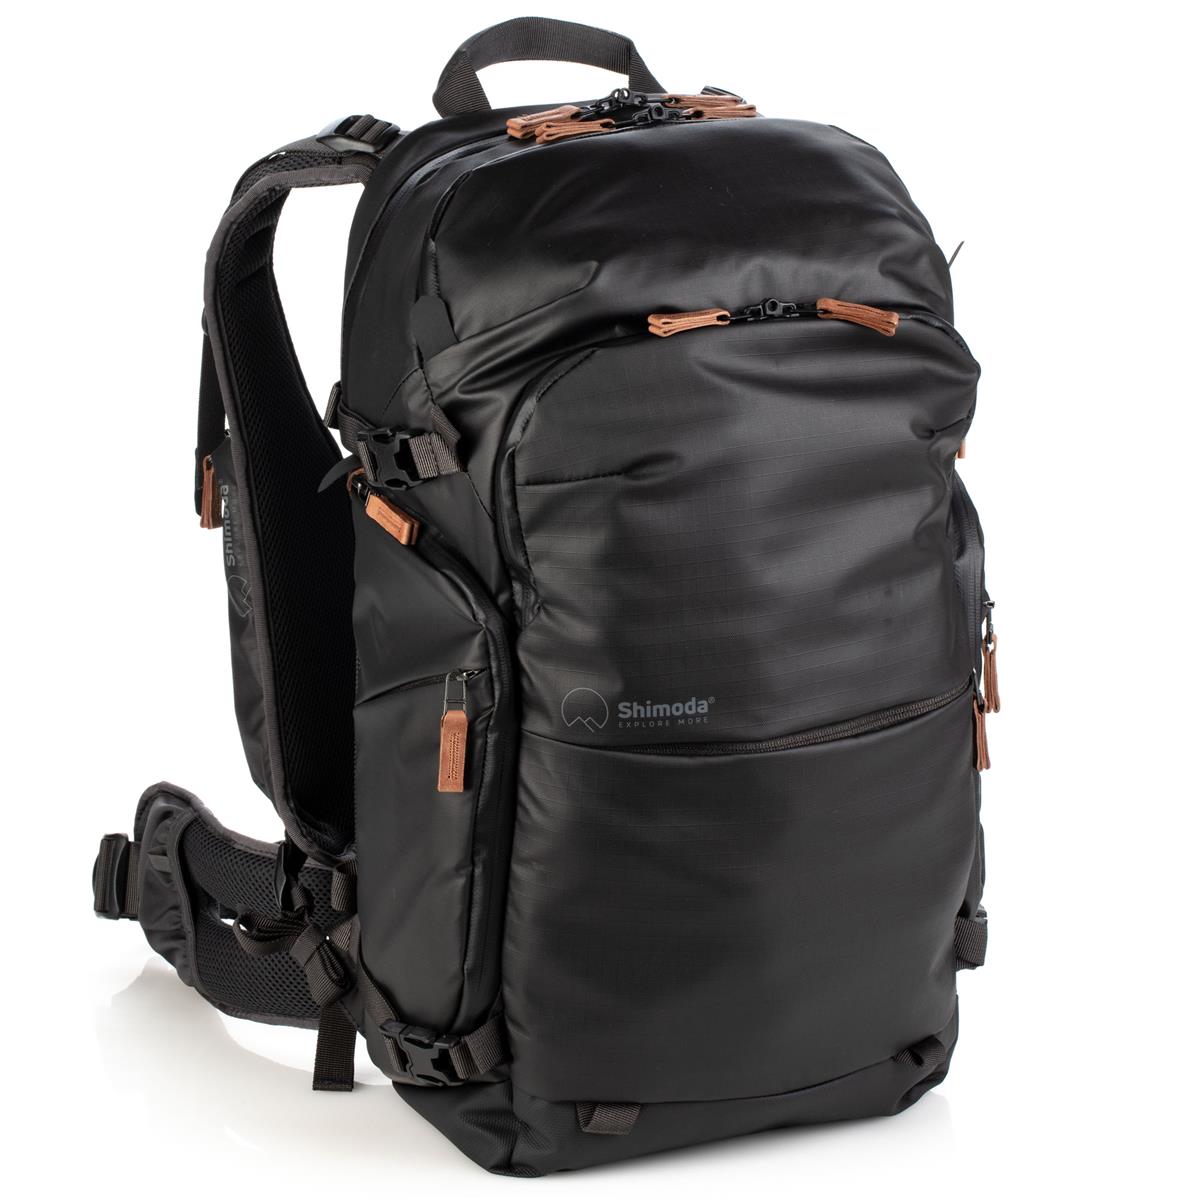 Image of Shimoda Explore V2 25 Liter Adventure Backpack Starter Kit